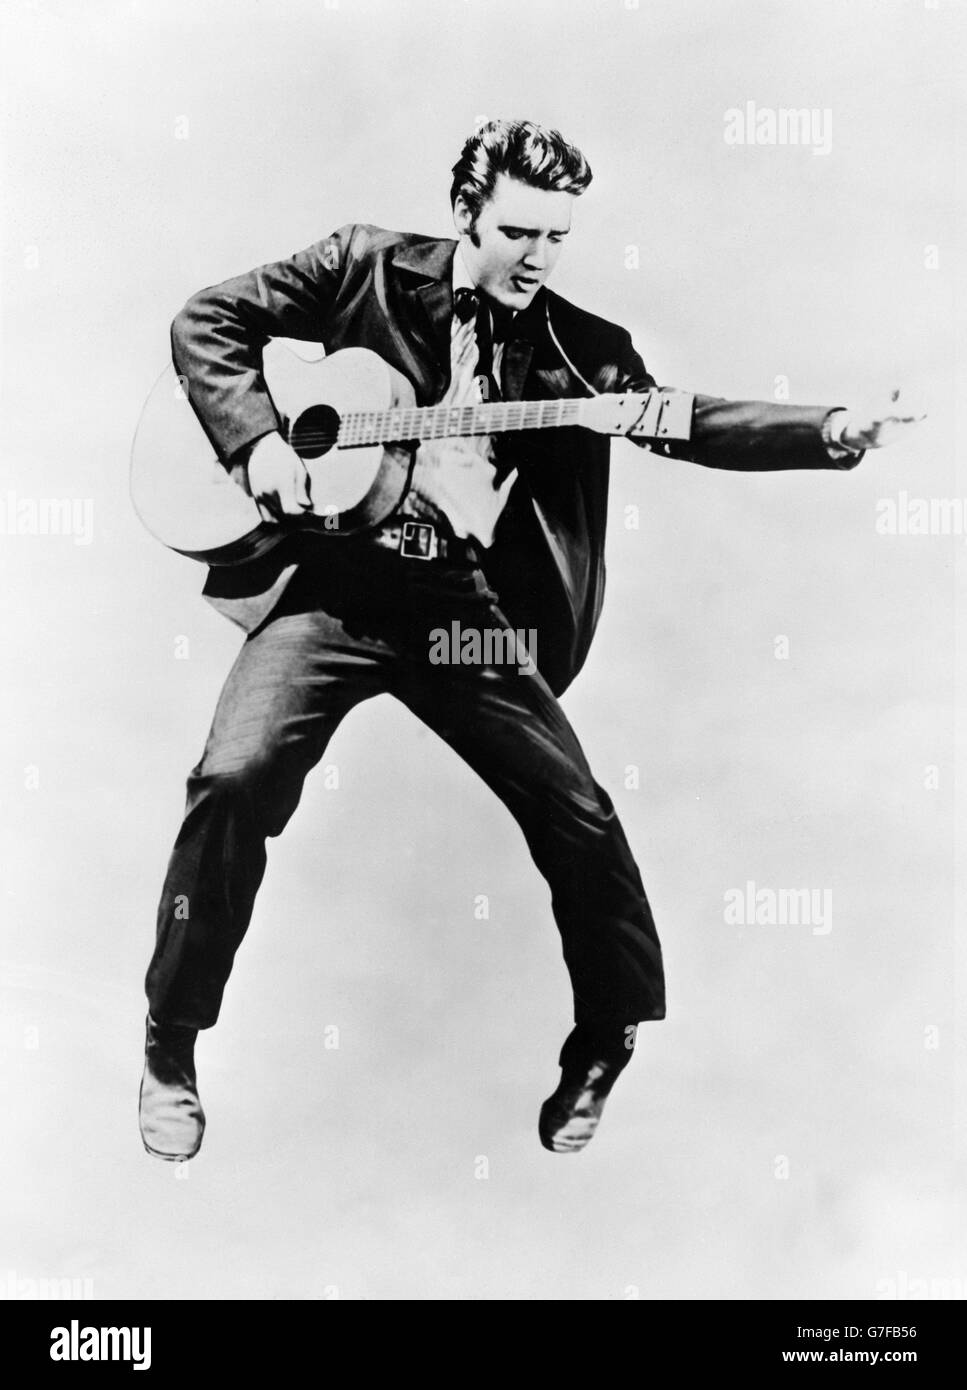 Le chanteur et acteur Elvis Presley, qui a récemment passé son appel à l'armée américaine. Banque D'Images